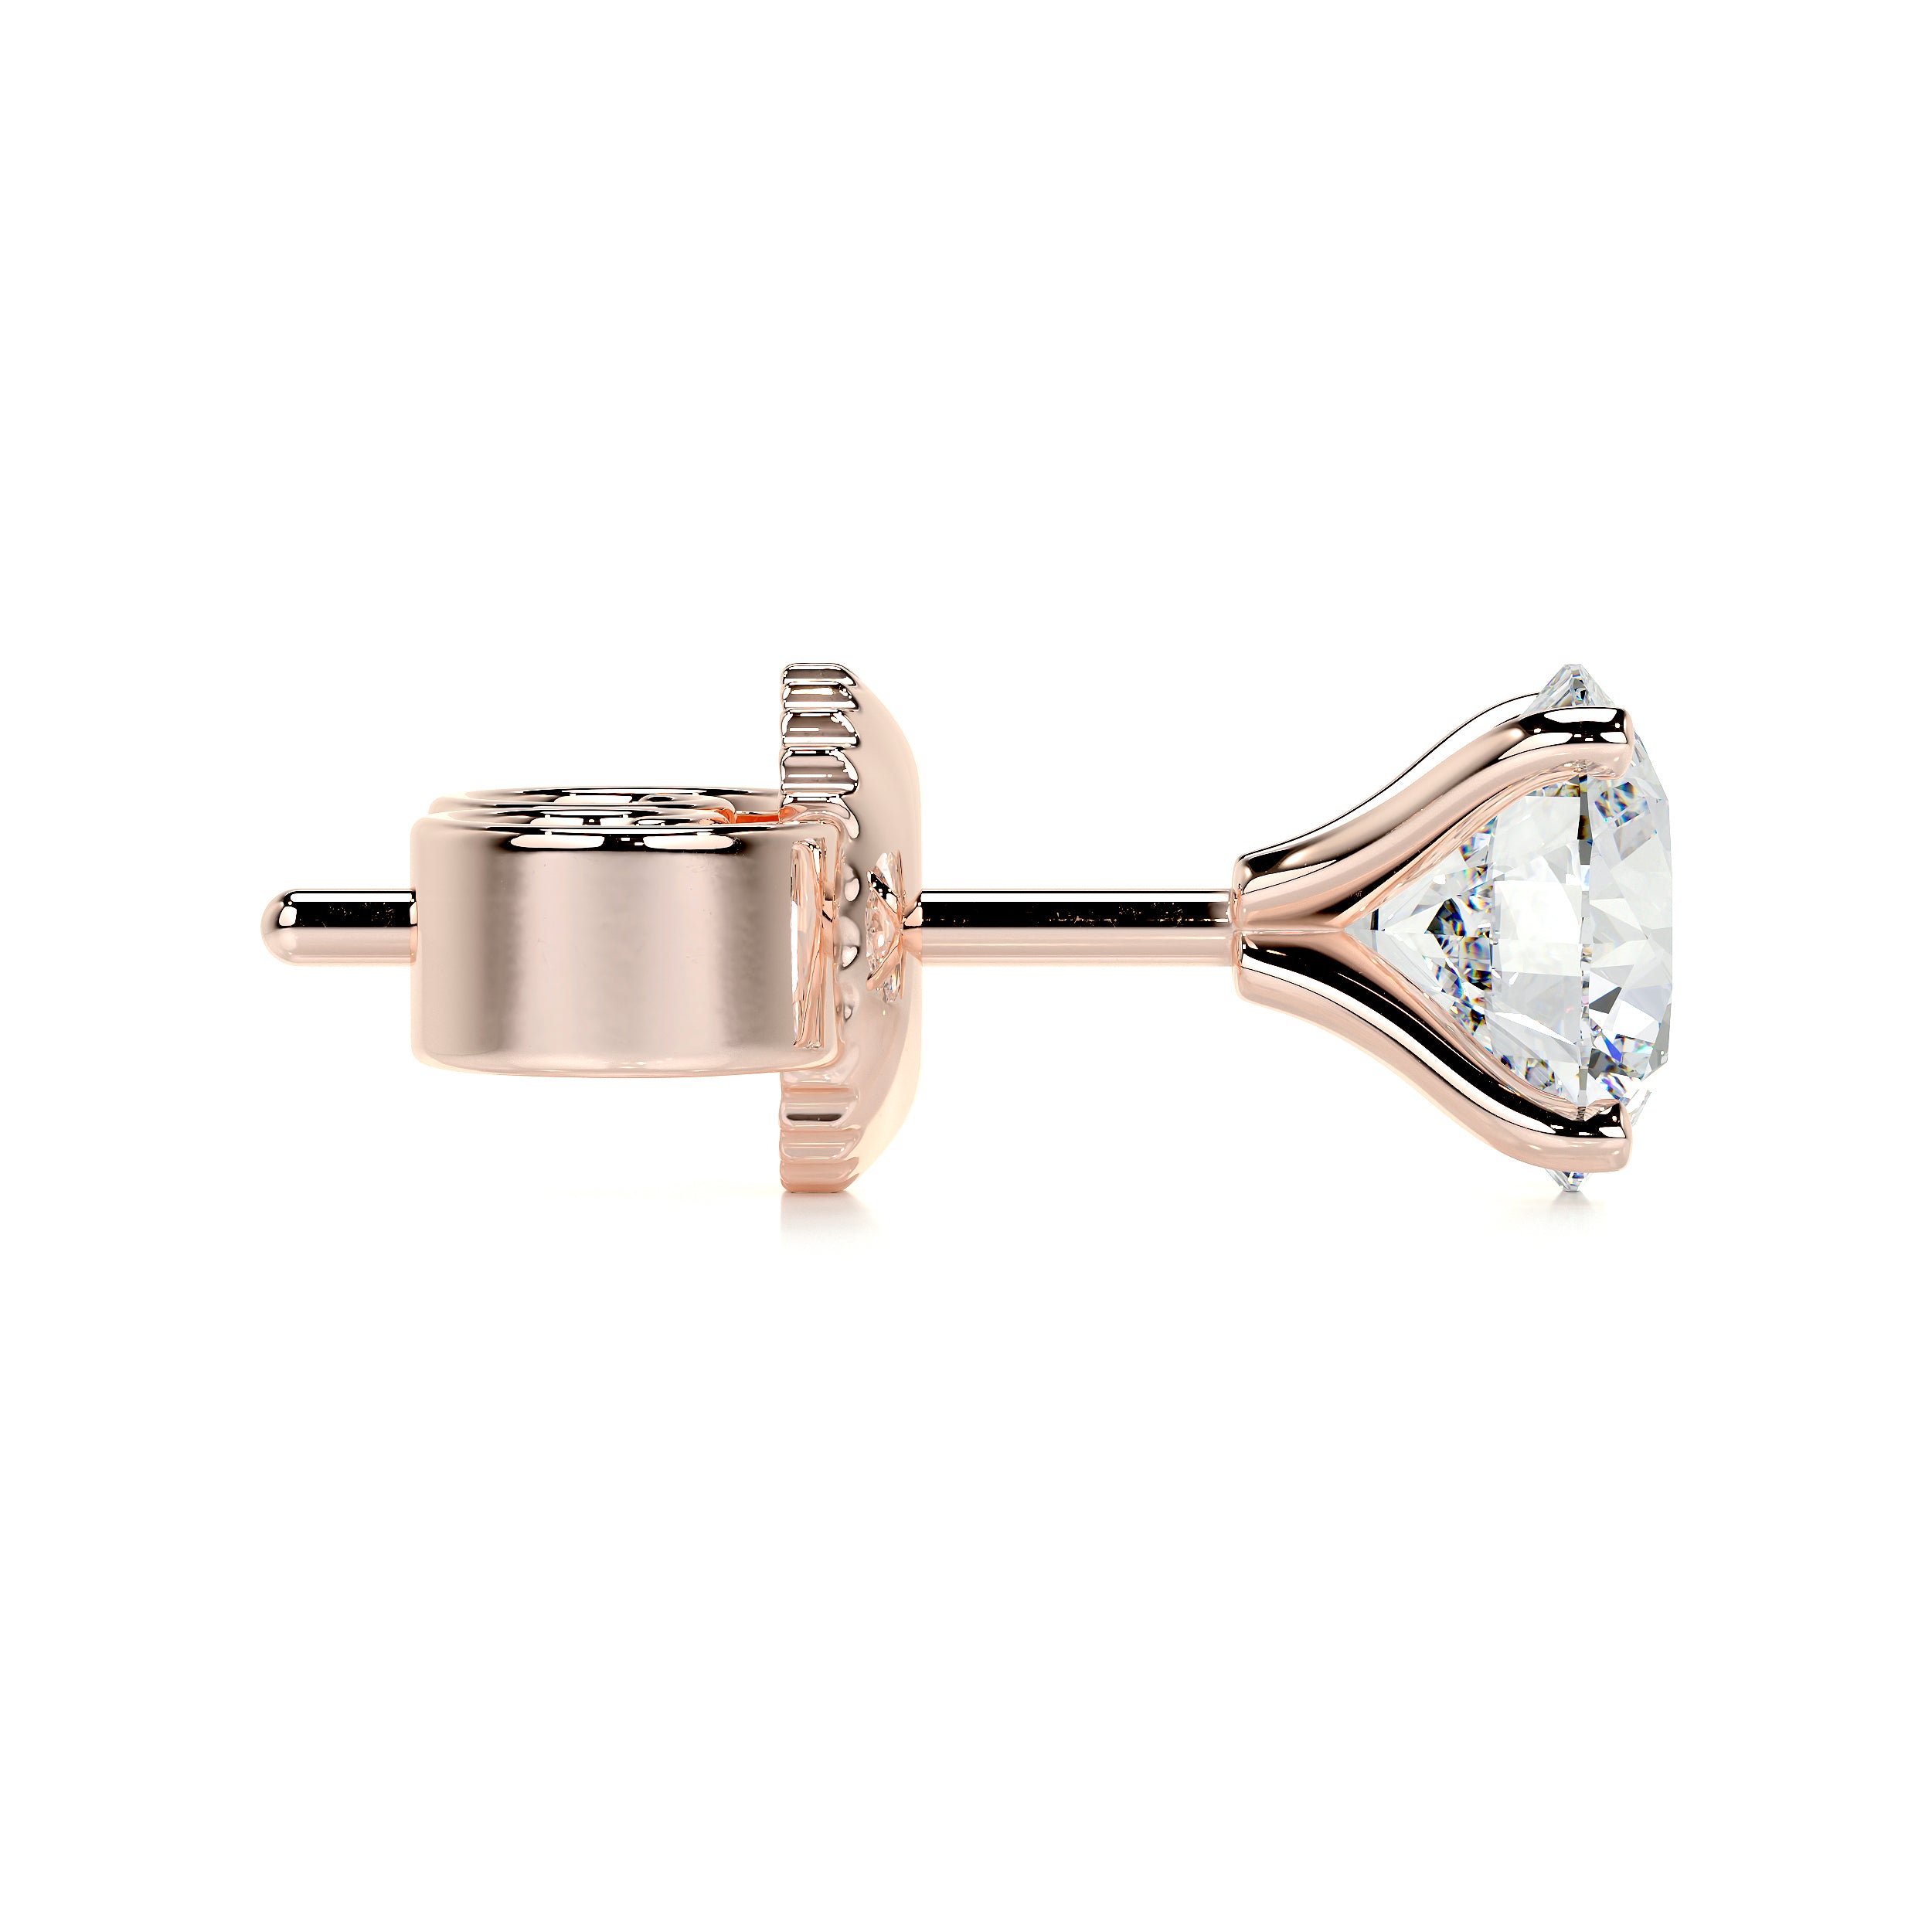 Allen Lab Grown Diamond Earrings   (4 Carat) -14K Rose Gold